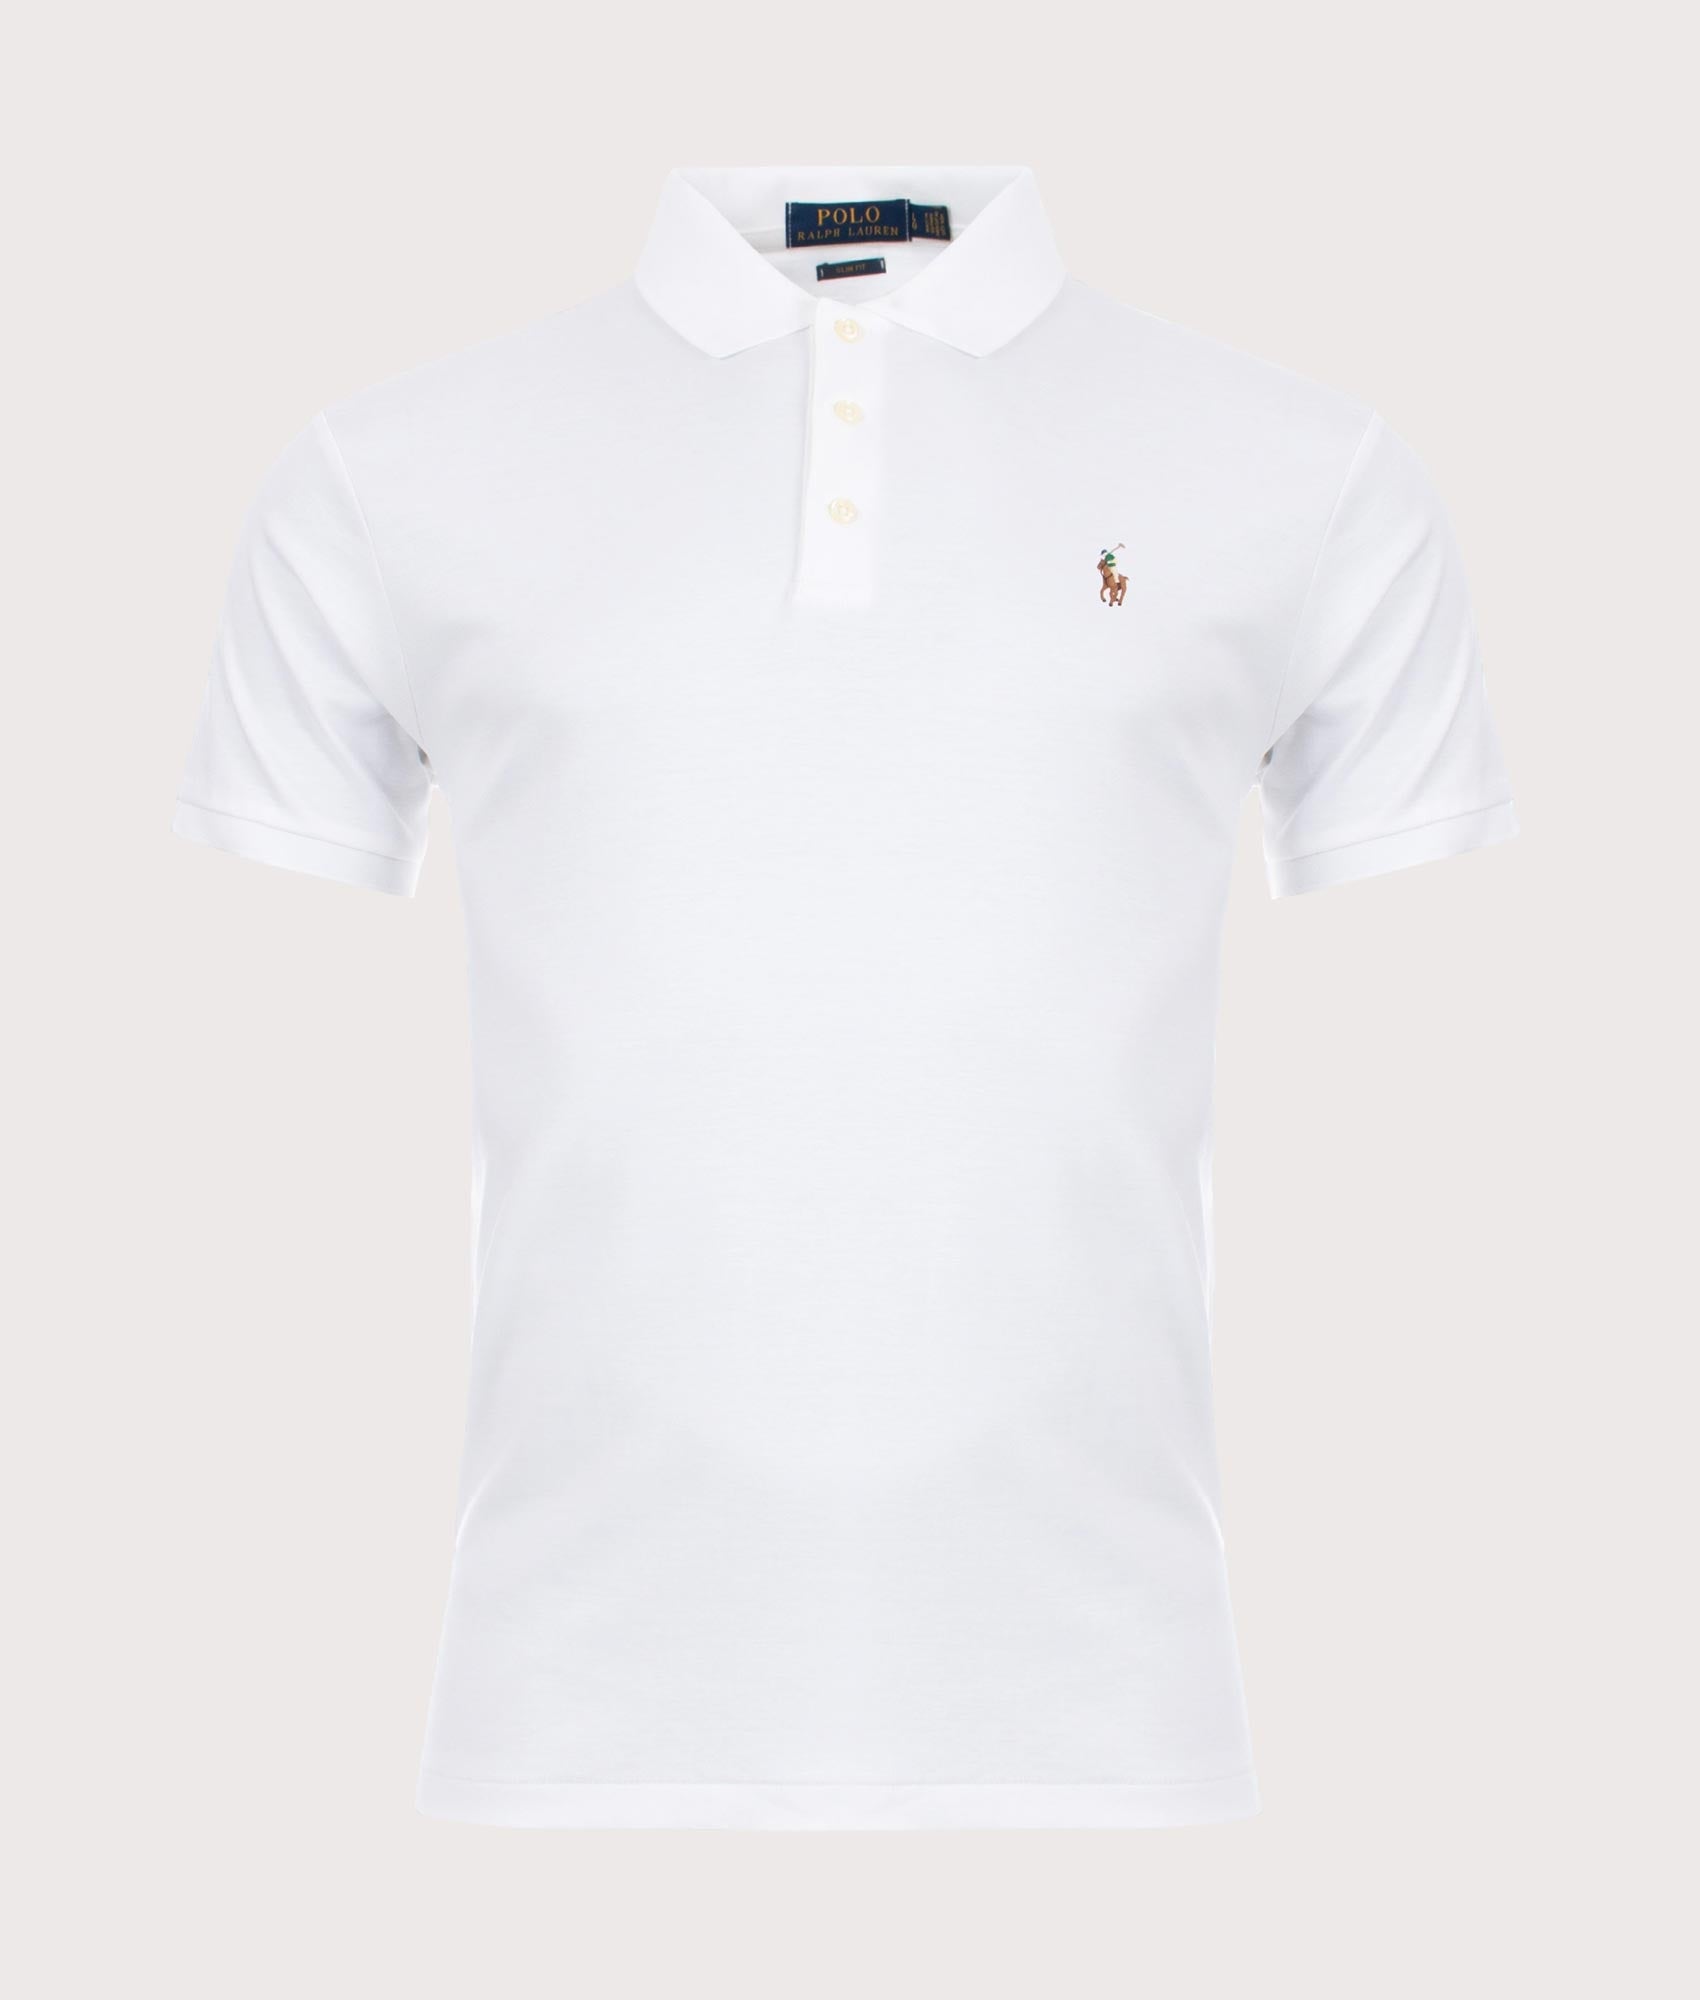 Polo Ralph Lauren Mens Slim Fit Soft Touch Pima Polo Shirt - Colour: Core 001 White - Size: Large